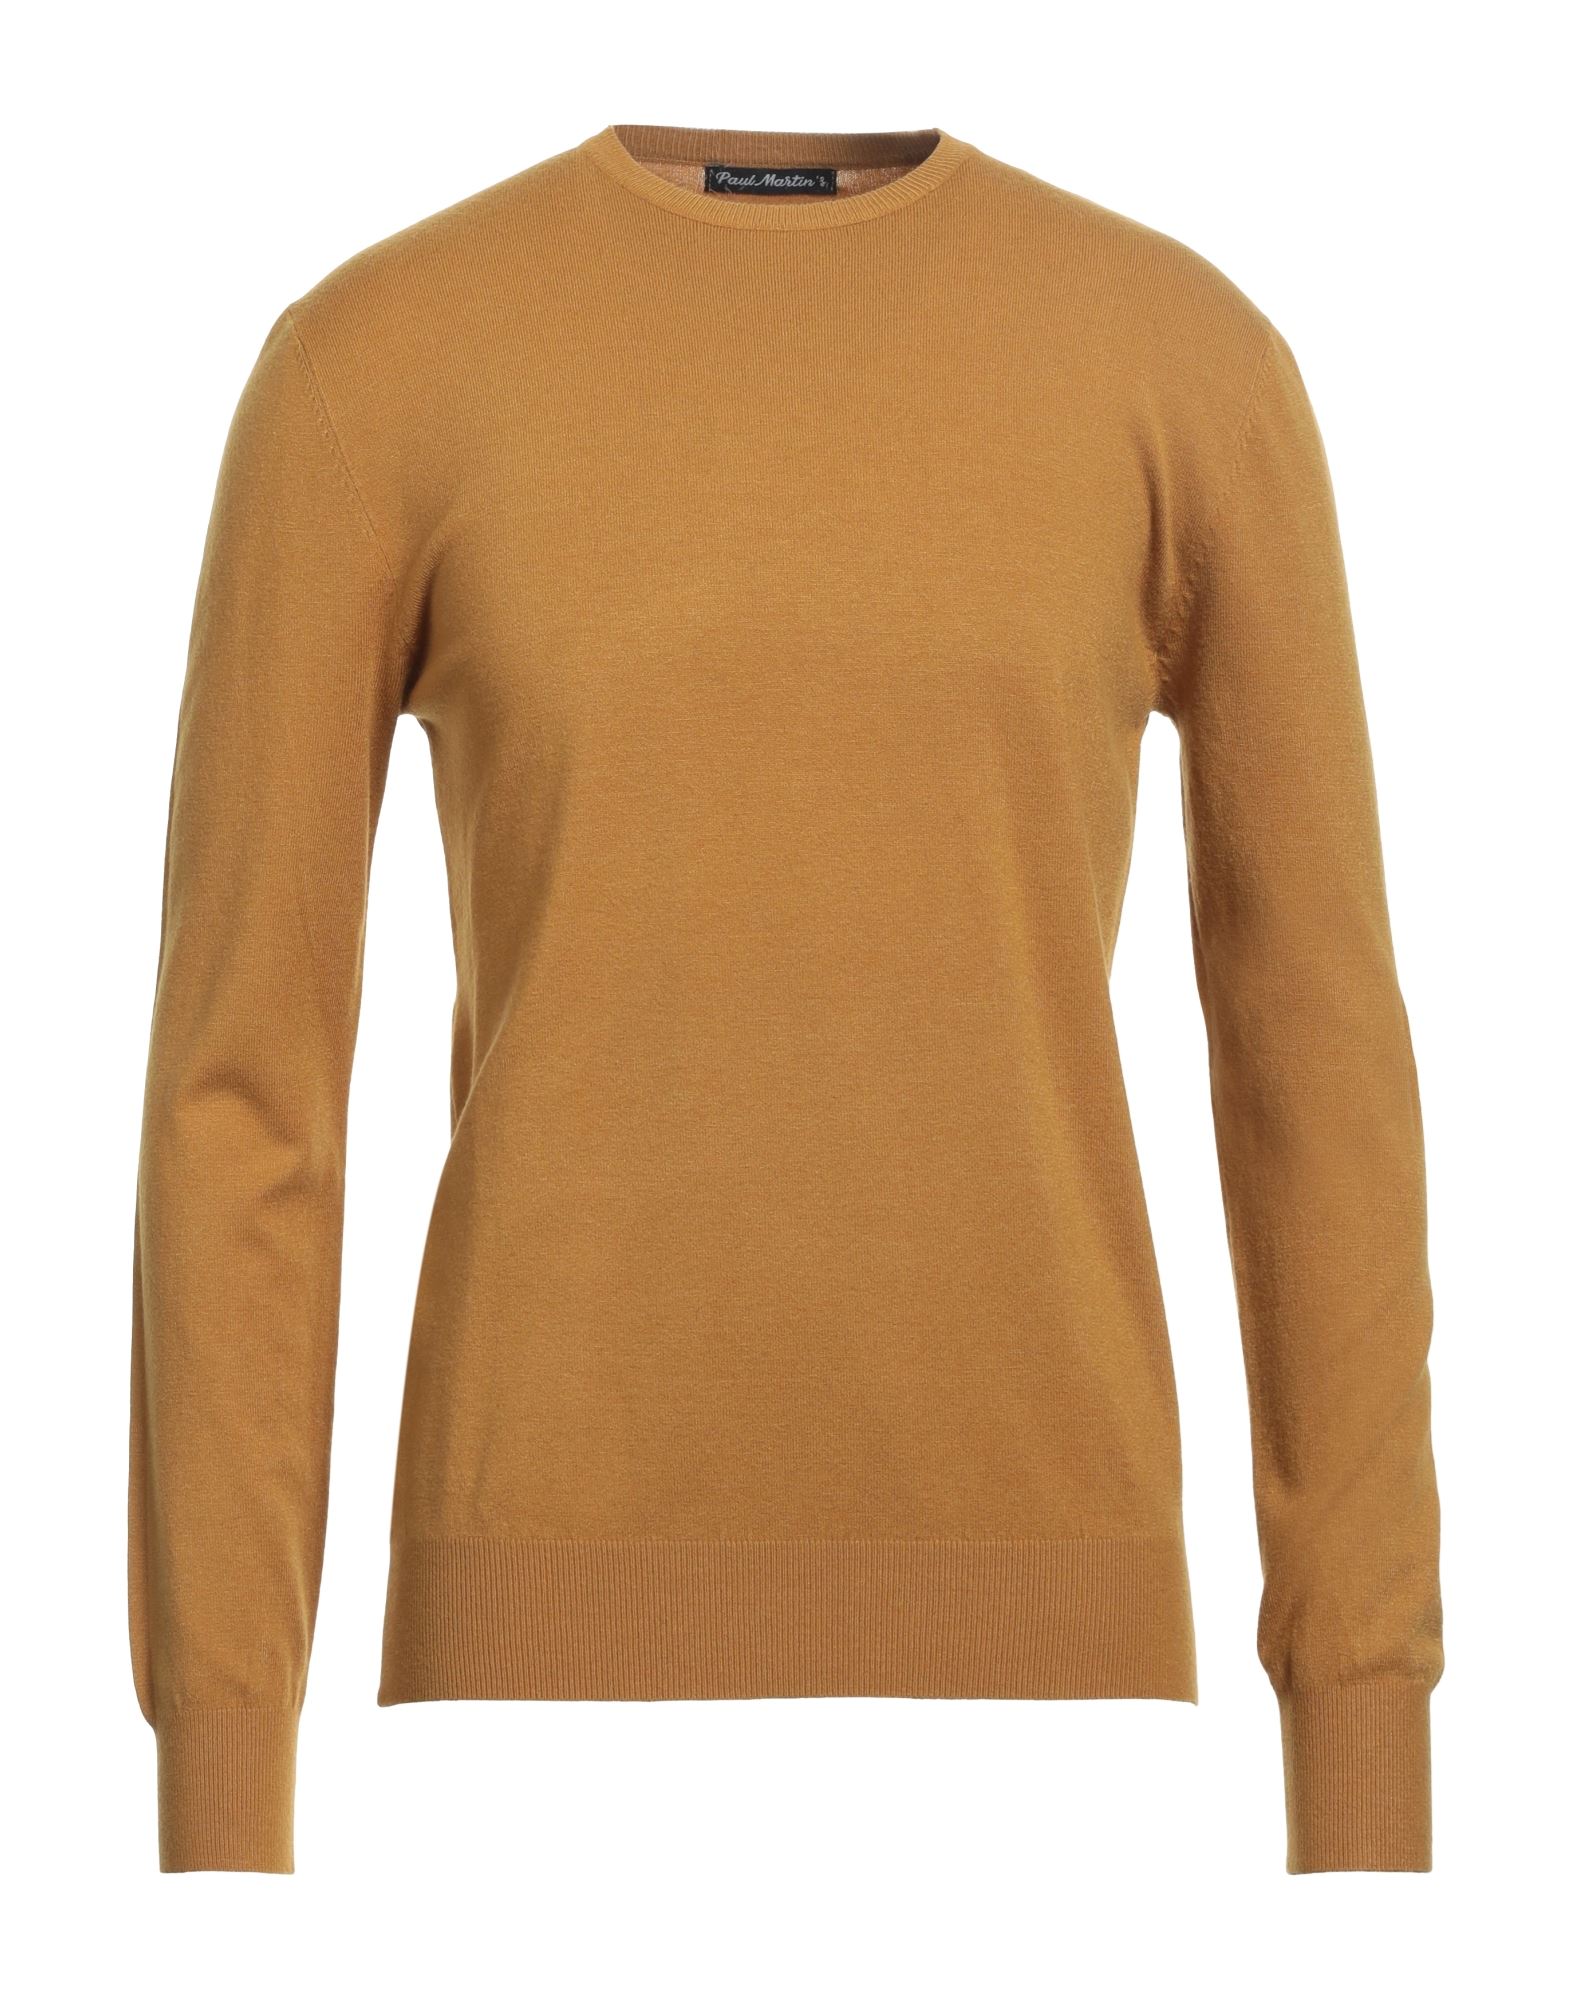 Paul Martin's Sweaters In Yellow